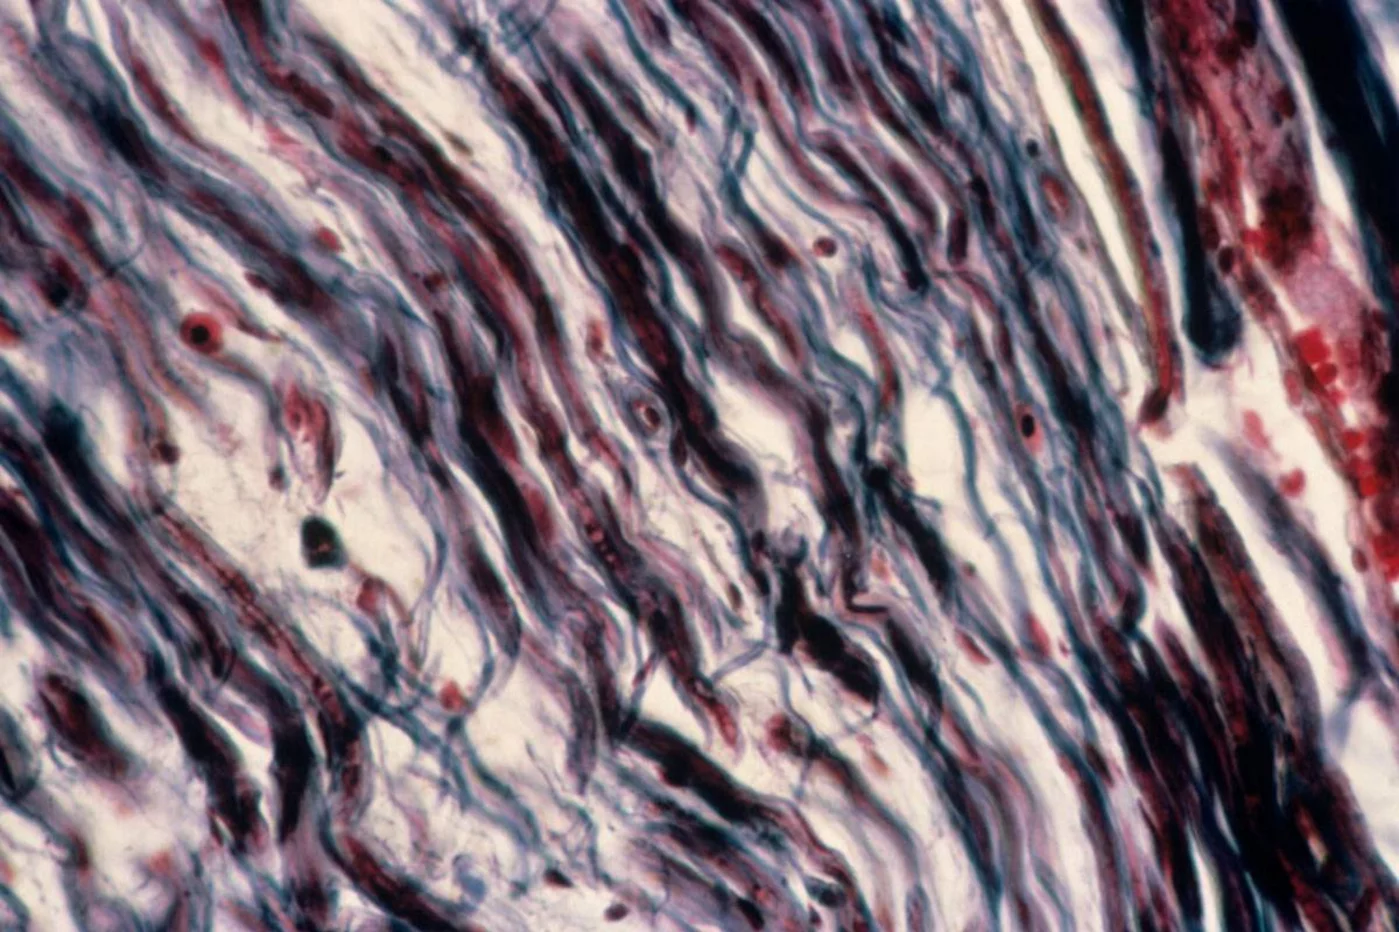 Micrografía de luz de fibras nerviosas que muestran la desmielinización debida a la esclerosis múltiple. Foto: AGEFOTOSTOCK